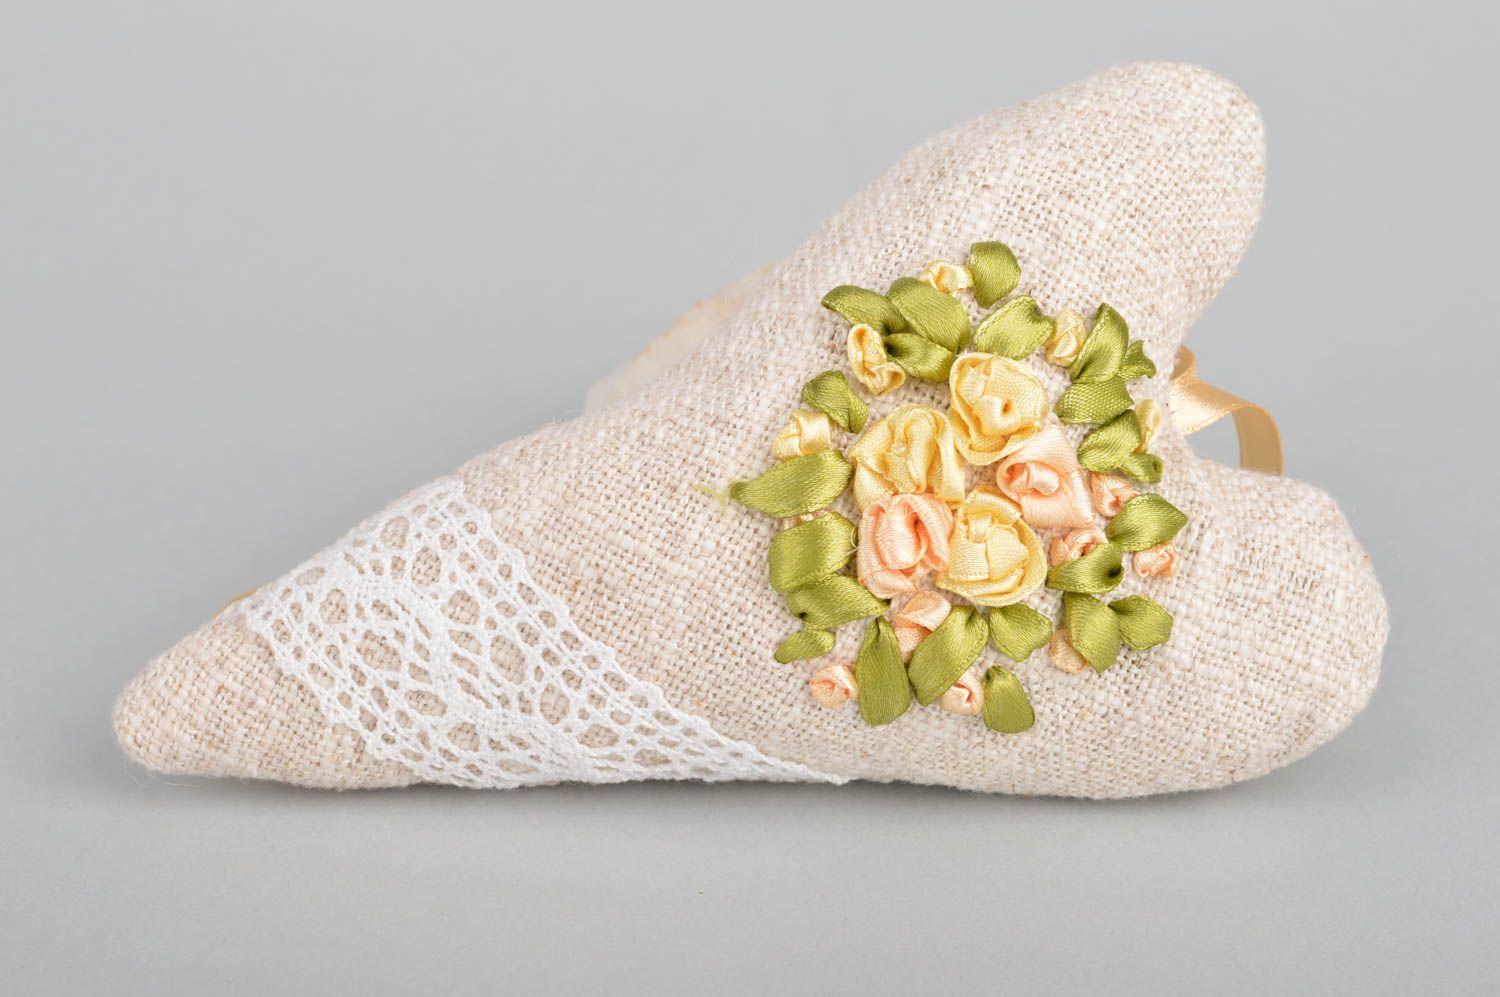 Интерьерная подвеска сердце из льна с вышитыми атласными цветками ручной работы фото 2